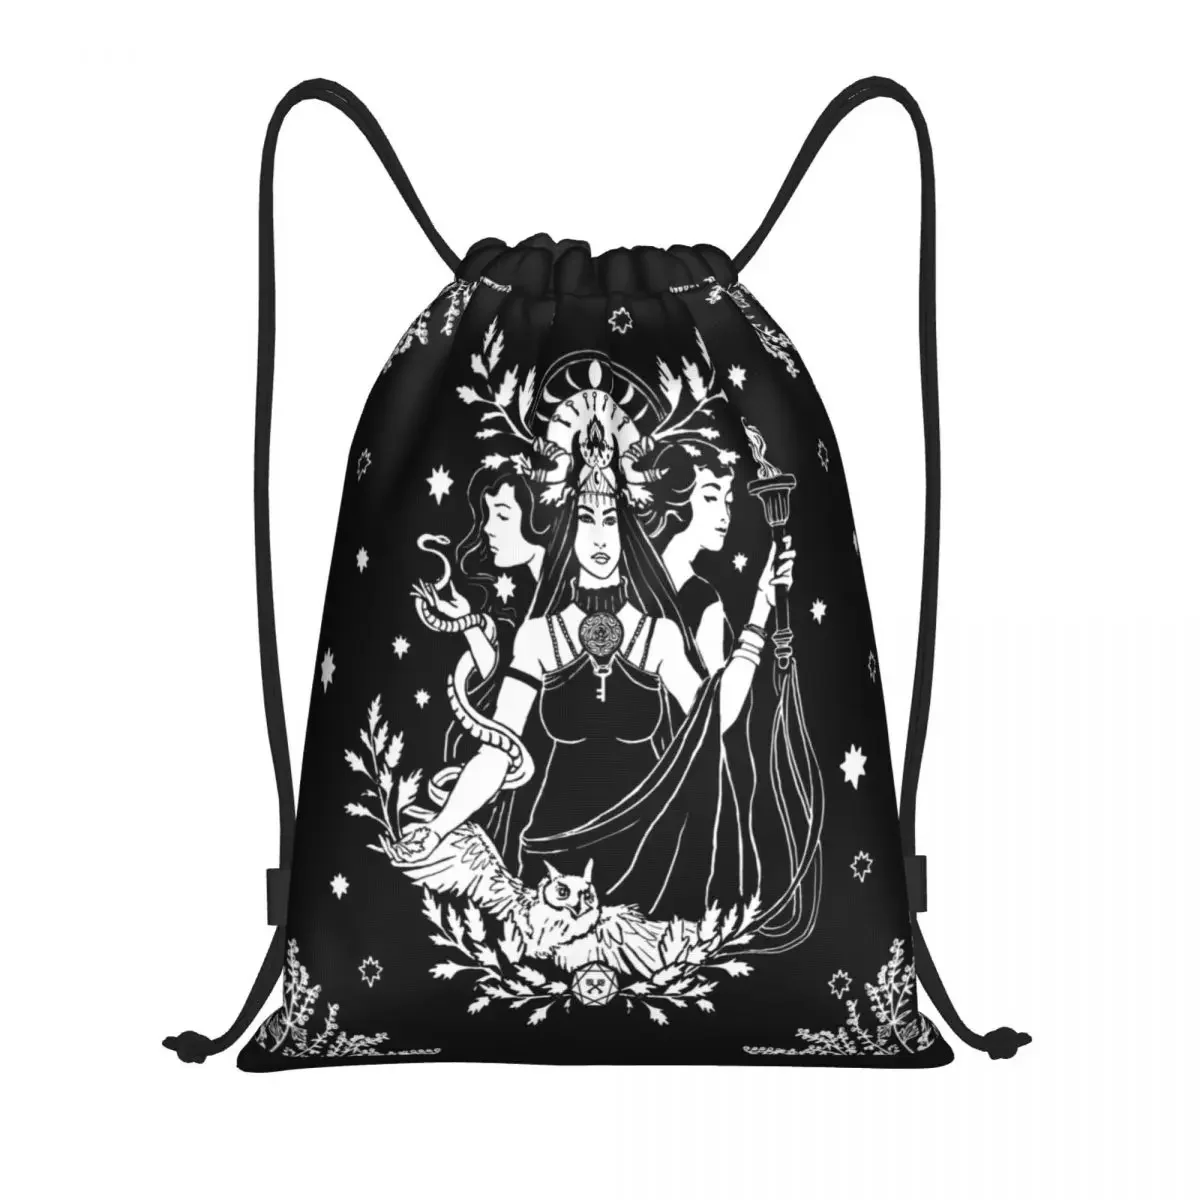 

Рюкзак на шнурке Hekate с тройной богиней, спортивная сумка для спортзала для мужчин и женщин, охотничий тренировочный рюкзак для Хэллоуина